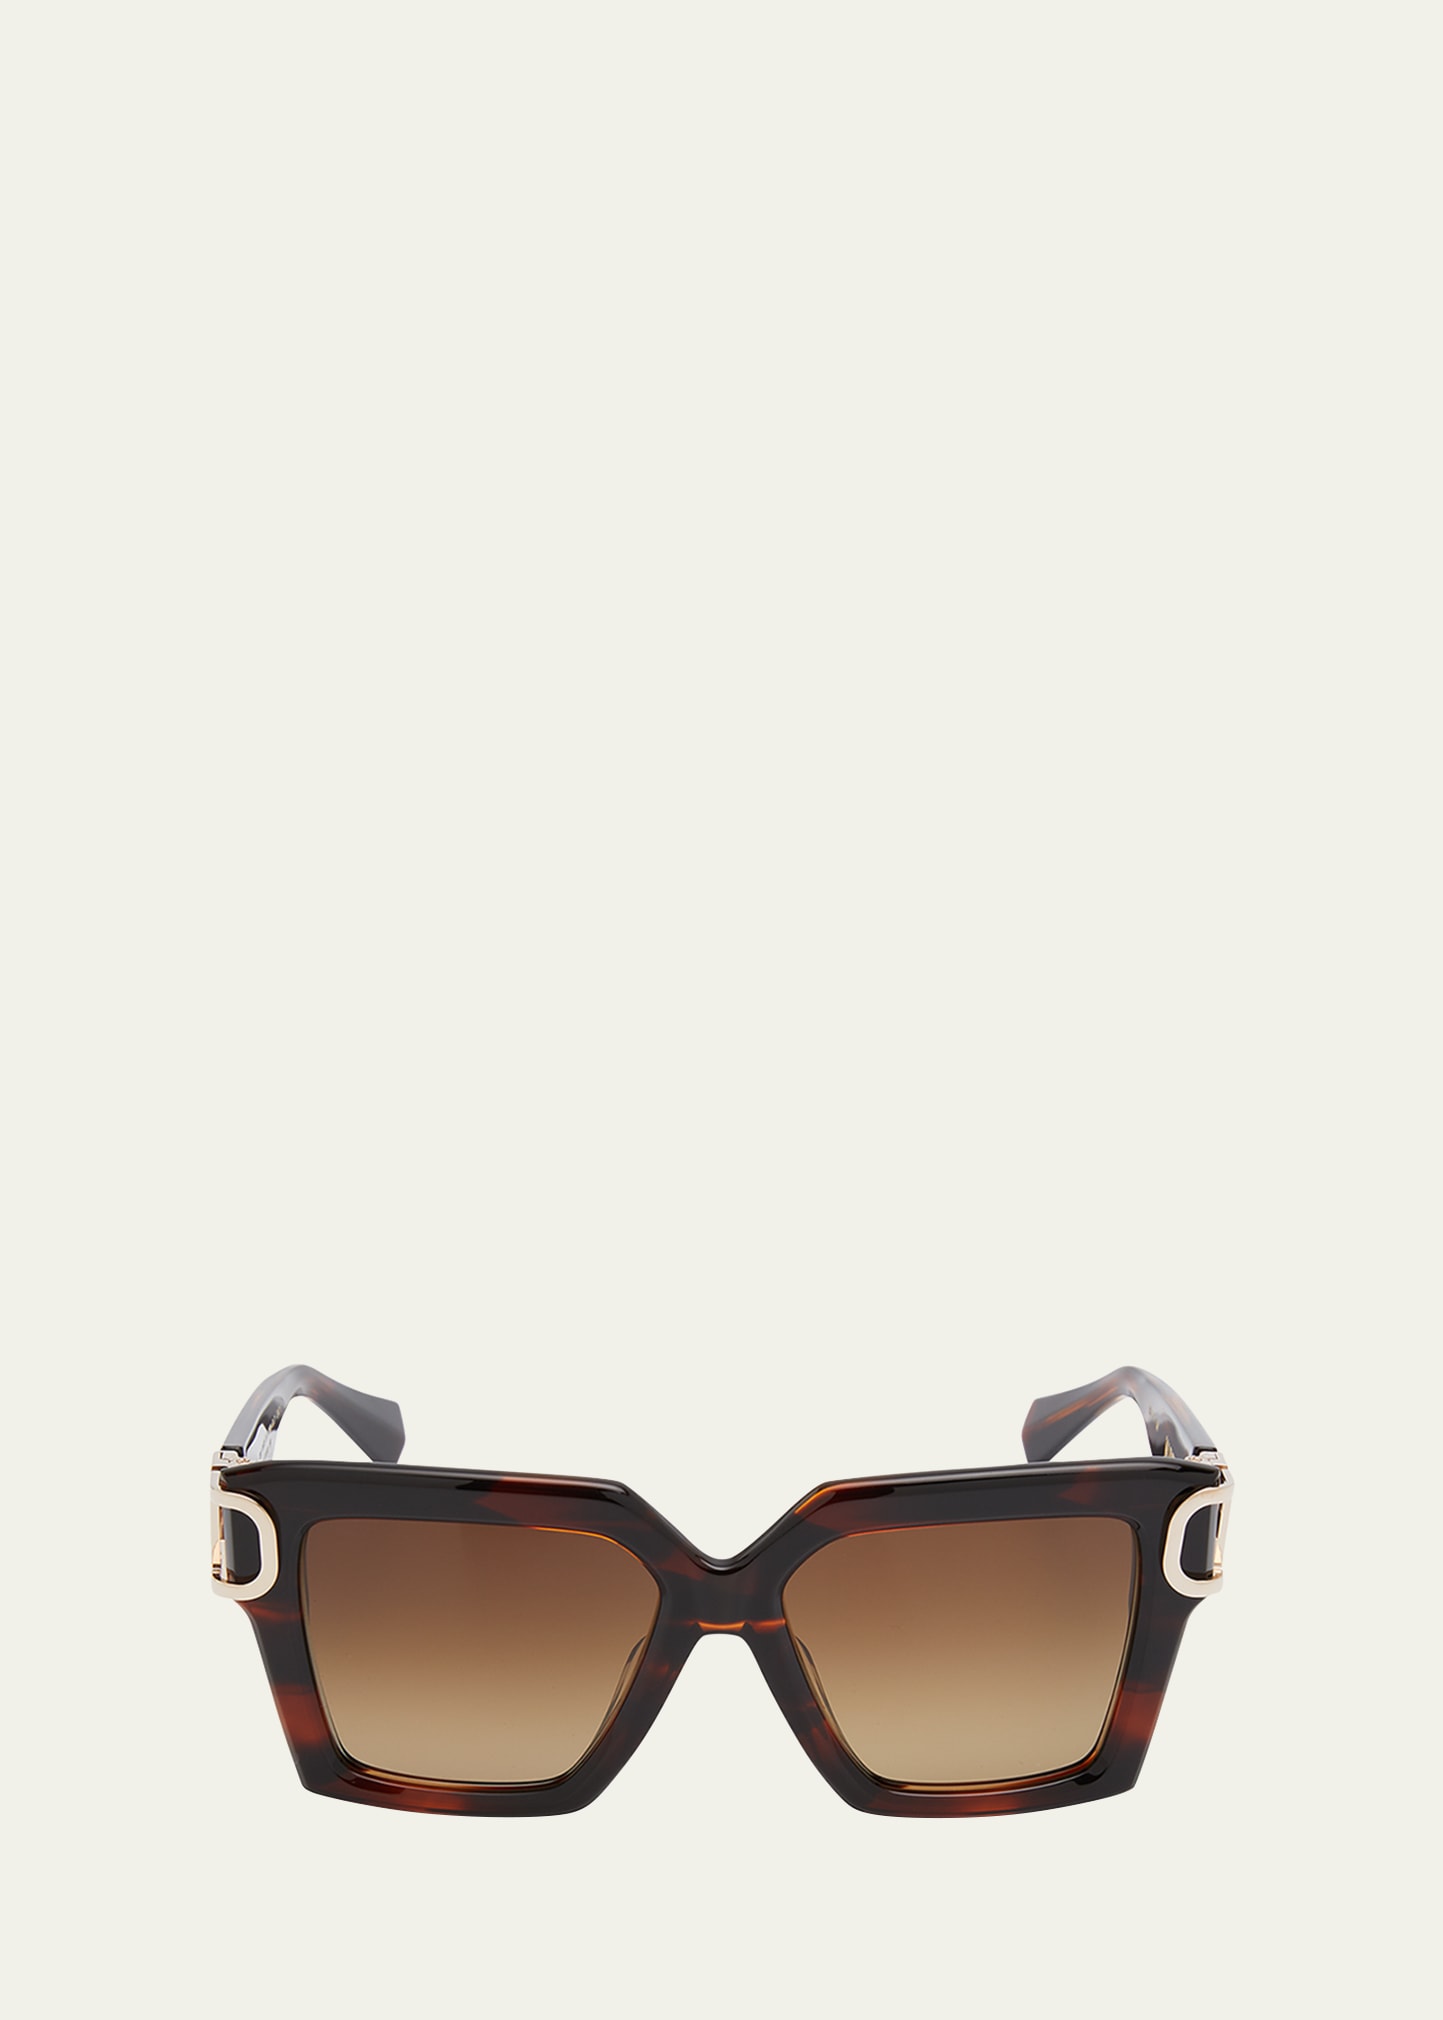 Valentino Uno Square Acetate & Titanium Sunglasses In Translucent Brown